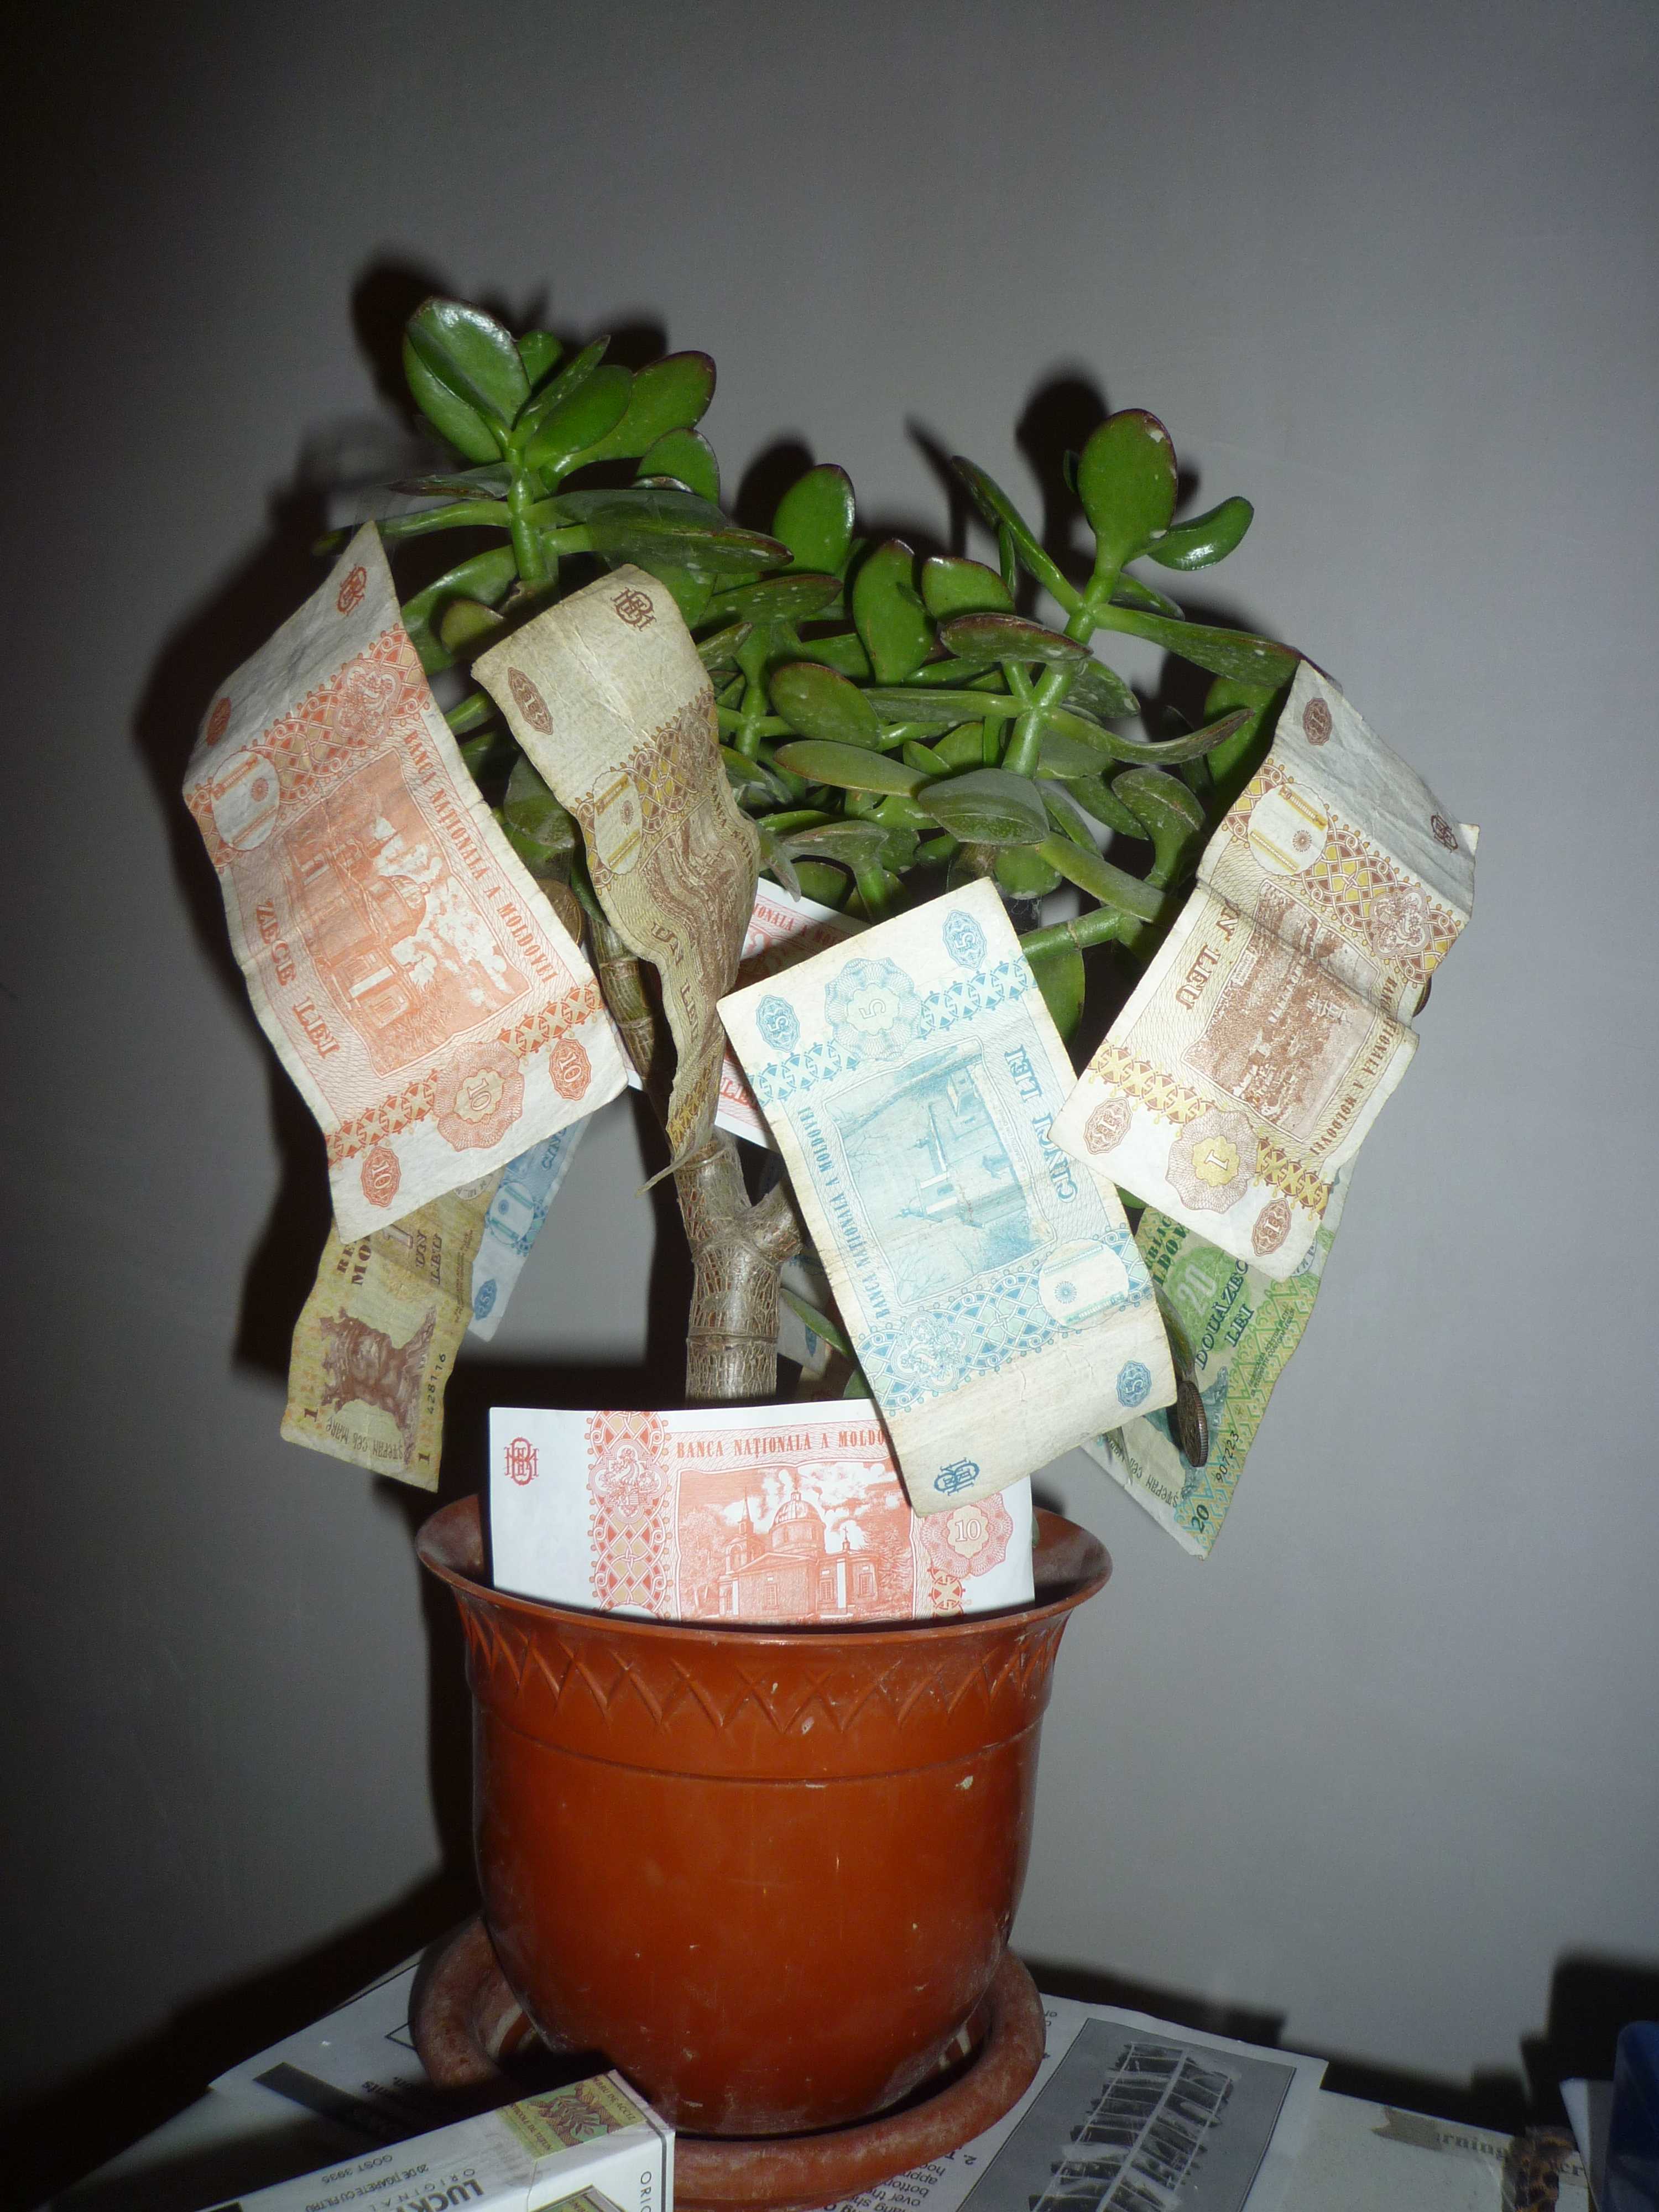 Дерево деньги как правильно посадить